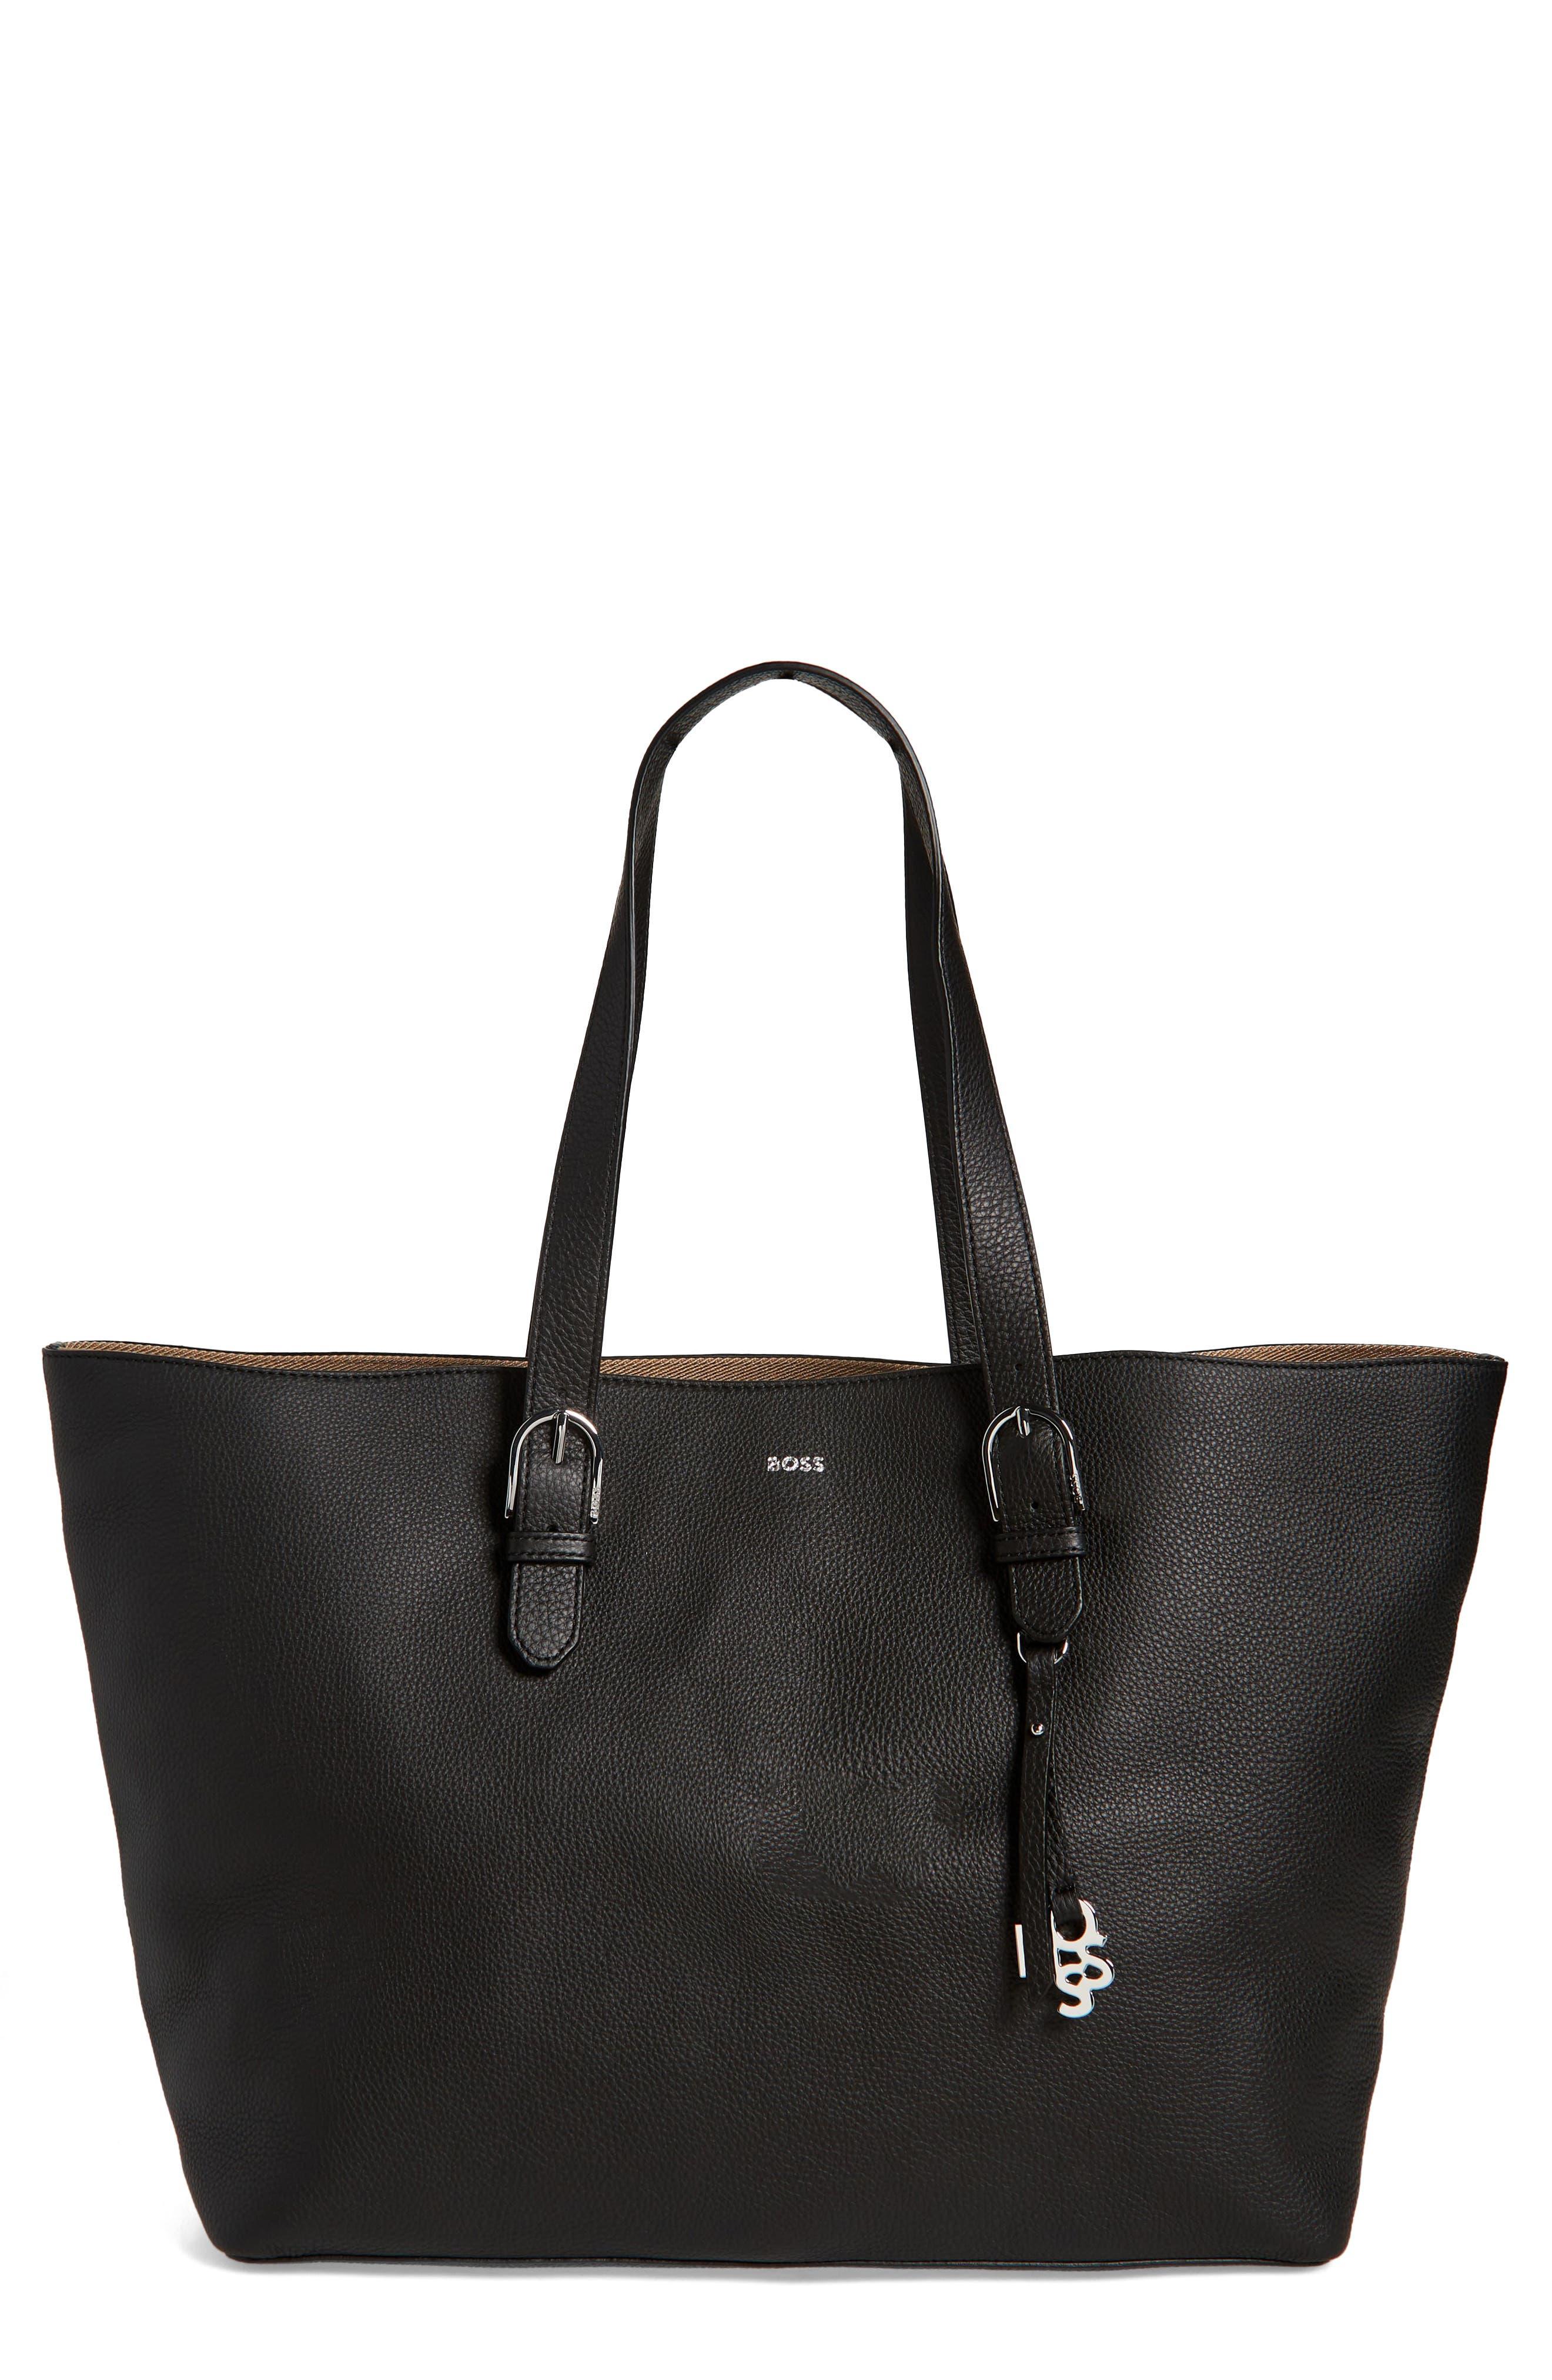 BOSS by HUGO BOSS Scarlet Leather Shopper Bag in Black | Lyst